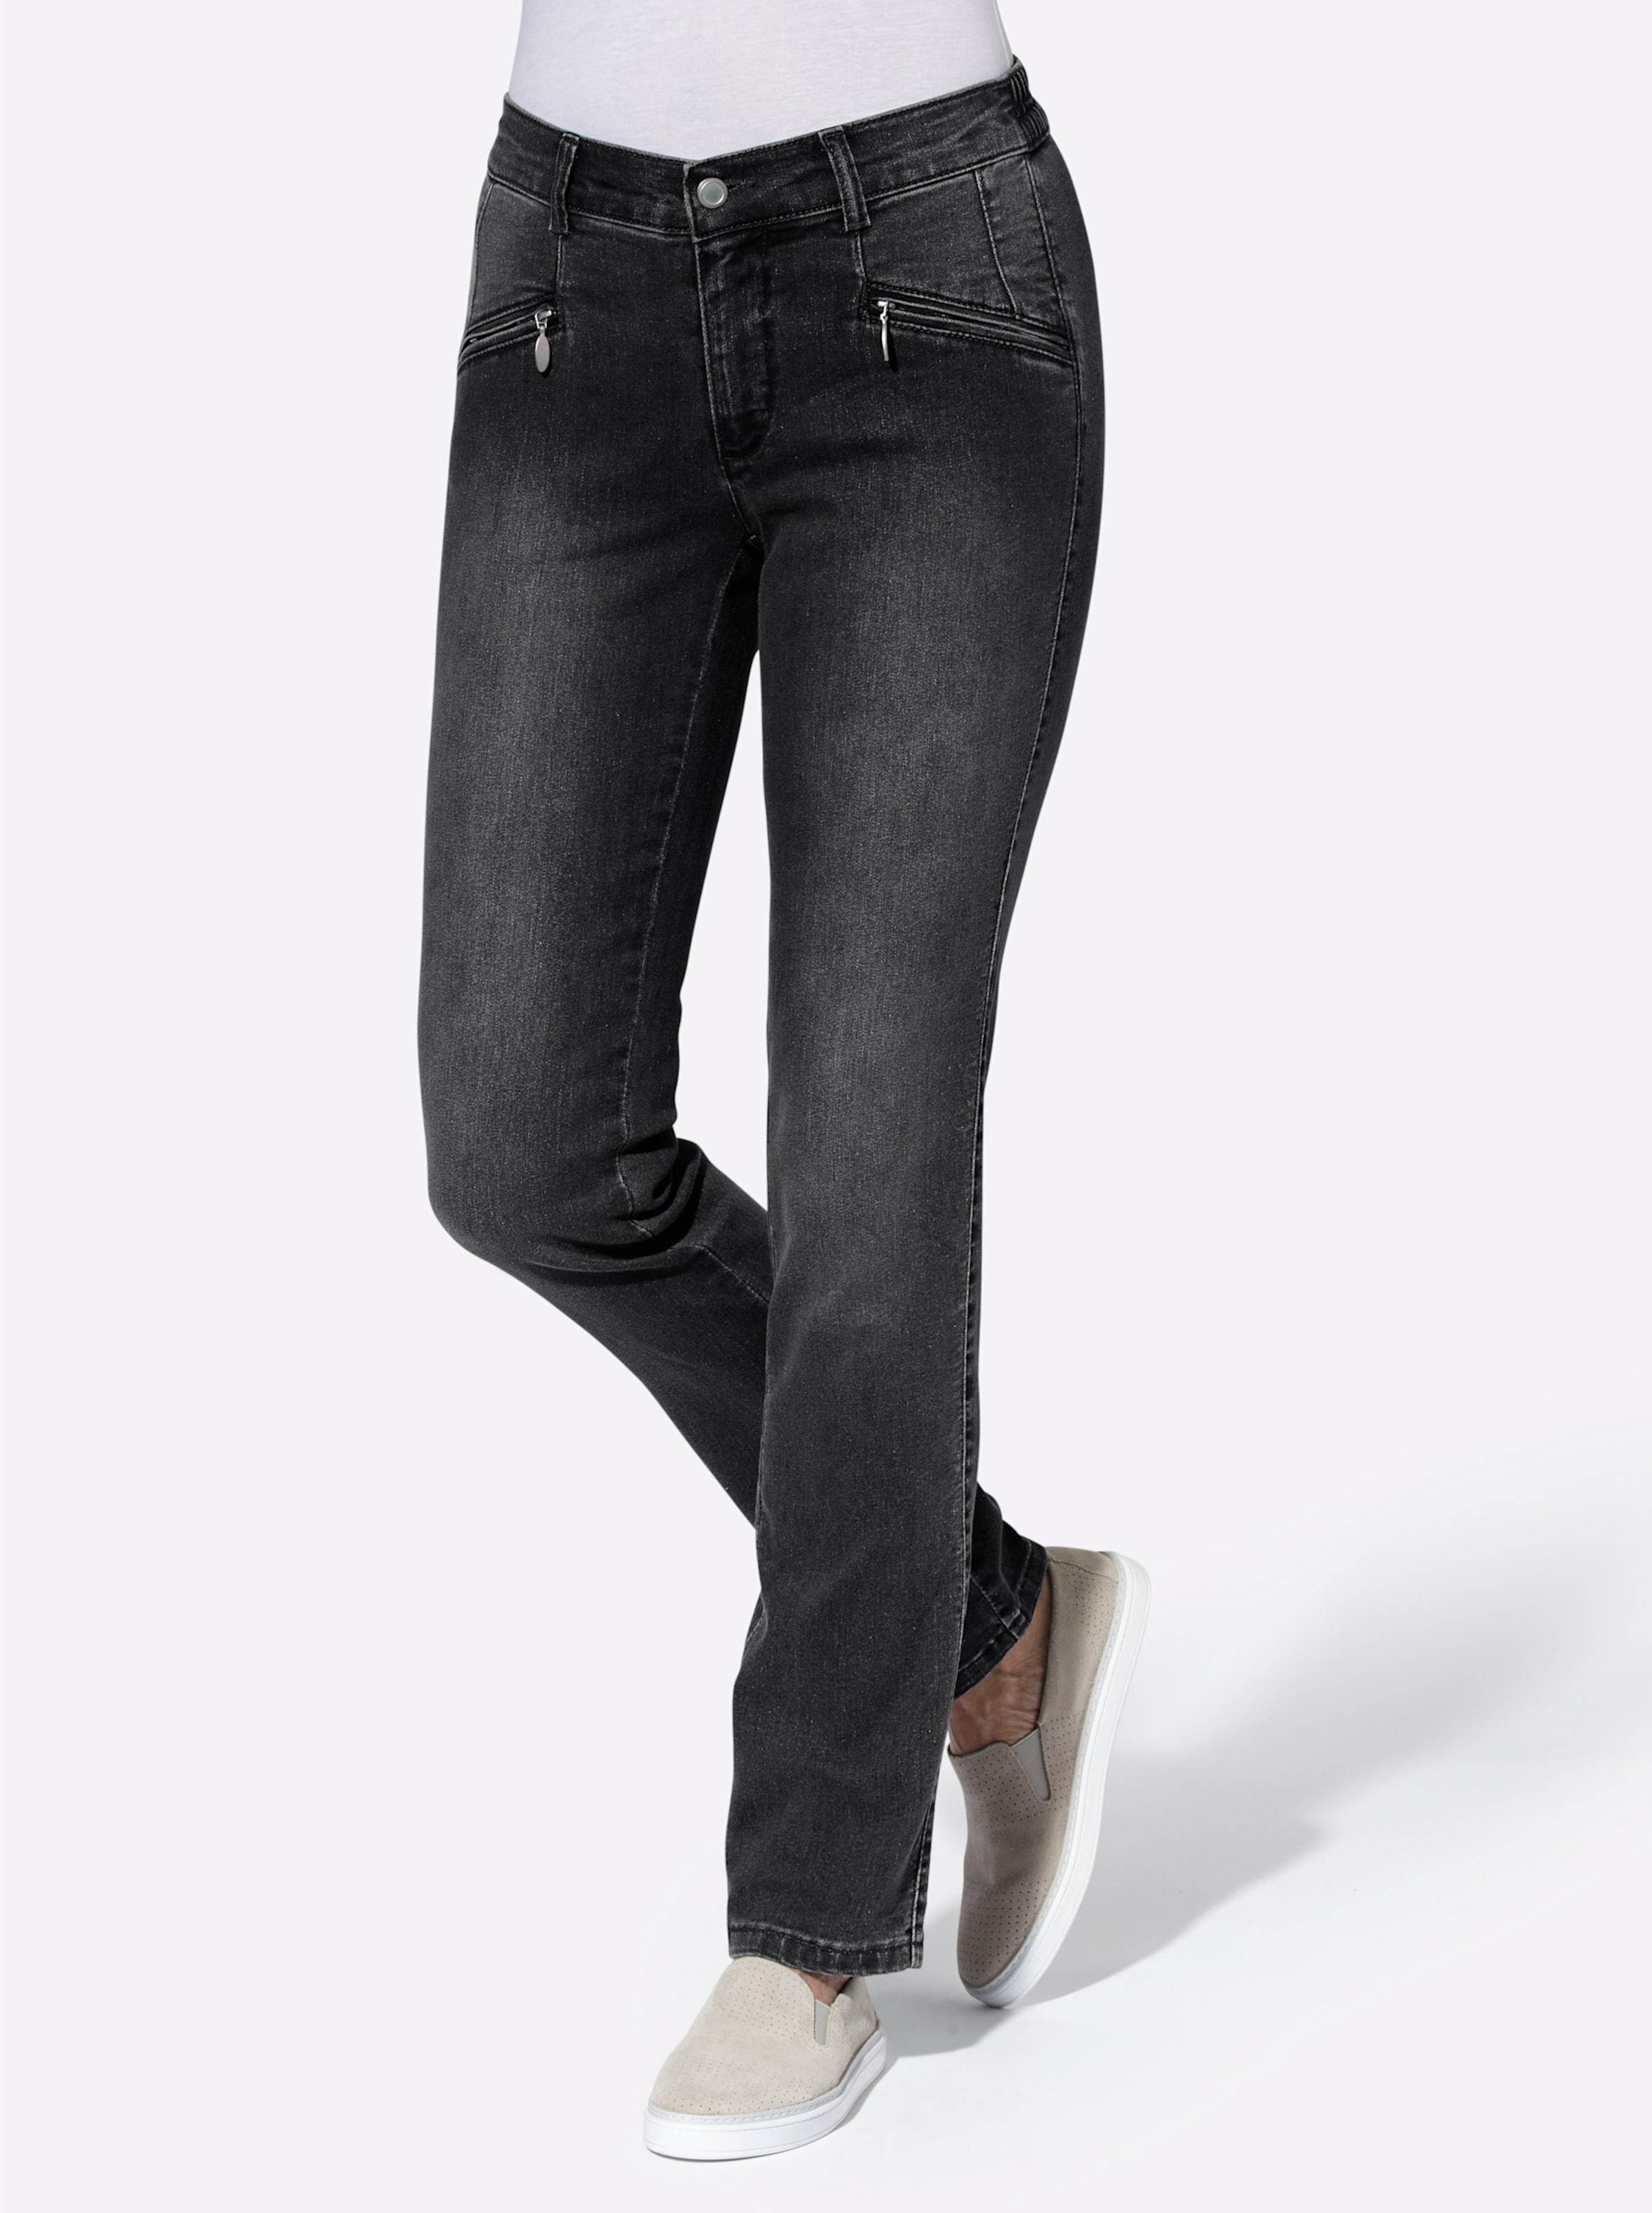 Witt Damen Jeans, black-denim